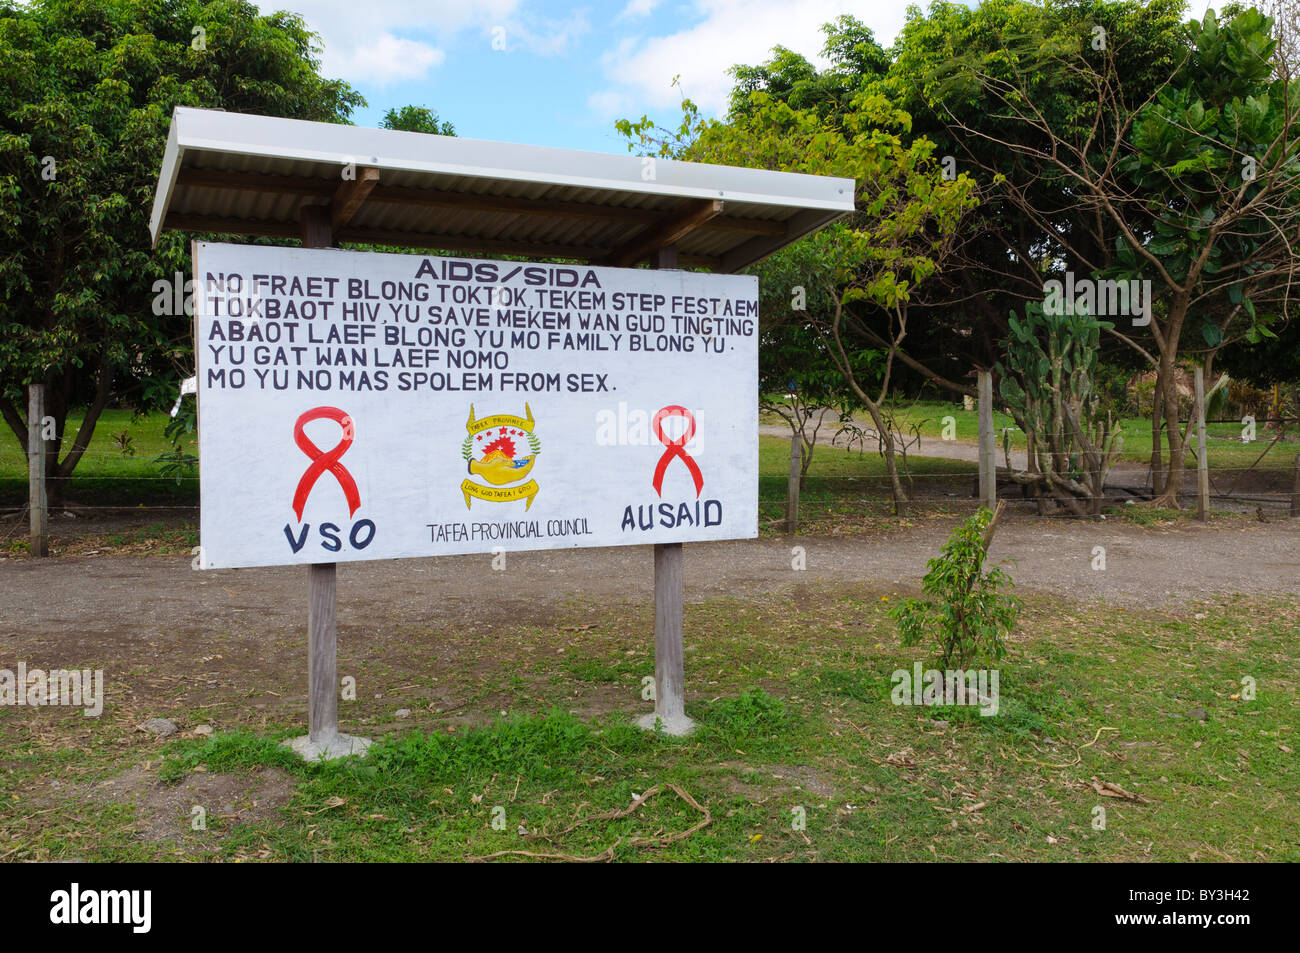 Panneau peint à la main : campagne de santé publique panneau d'avertissement sur le sida et les IST, dans le cadre d'un projet d'aide à l'étranger, en Vanutatu, Pacifique Sud. Bislama le créole. Banque D'Images